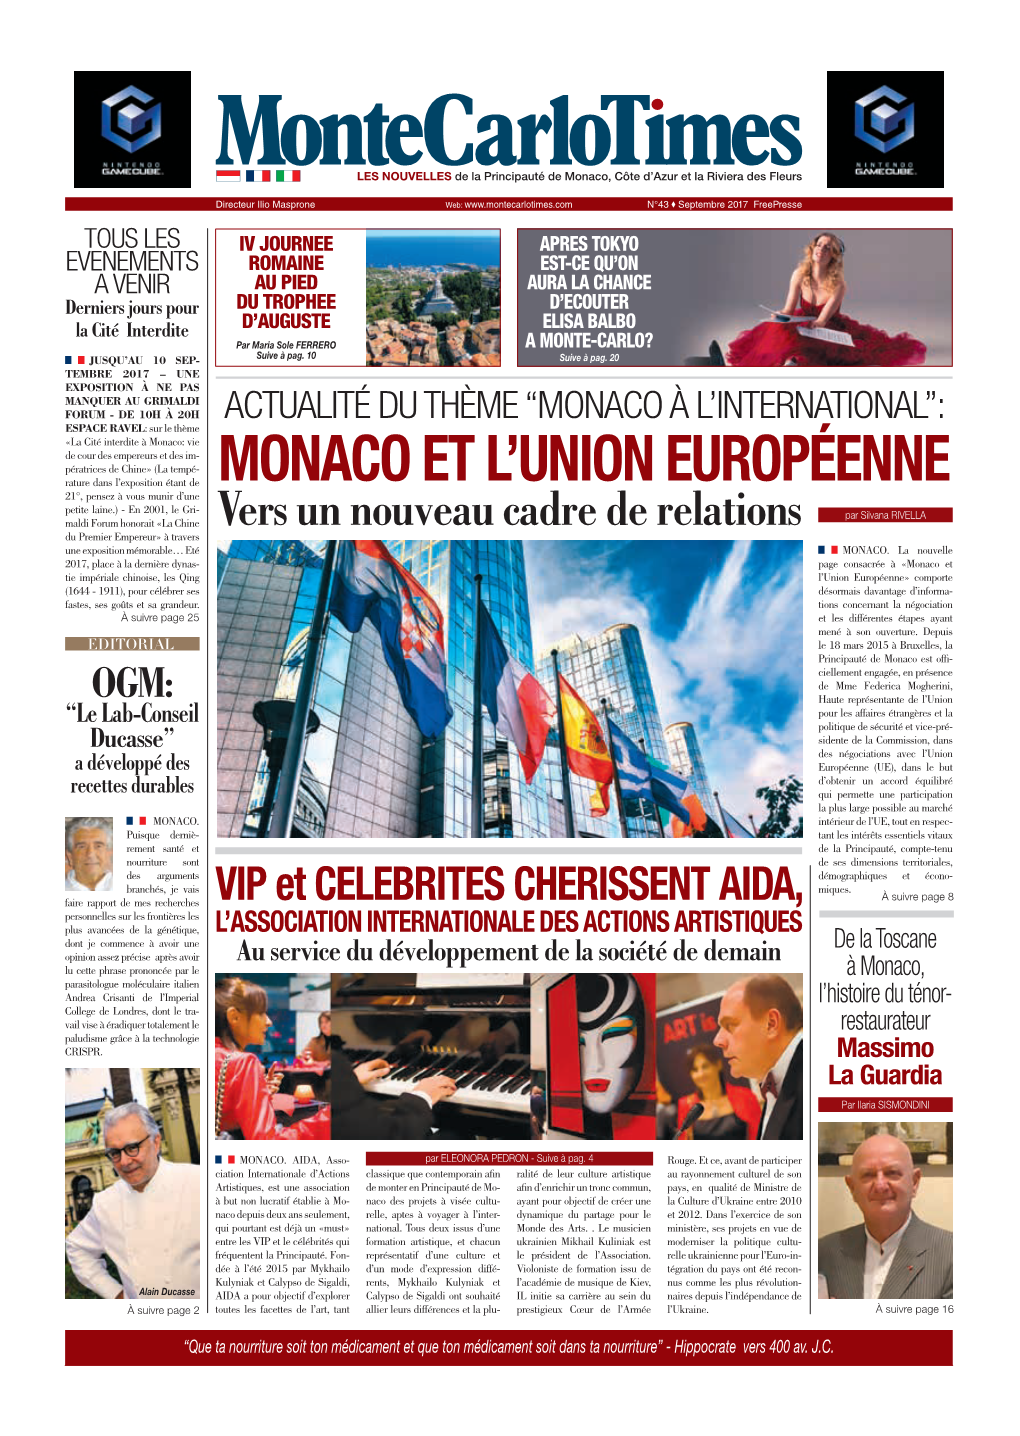 Monaco Et L'union Européenne